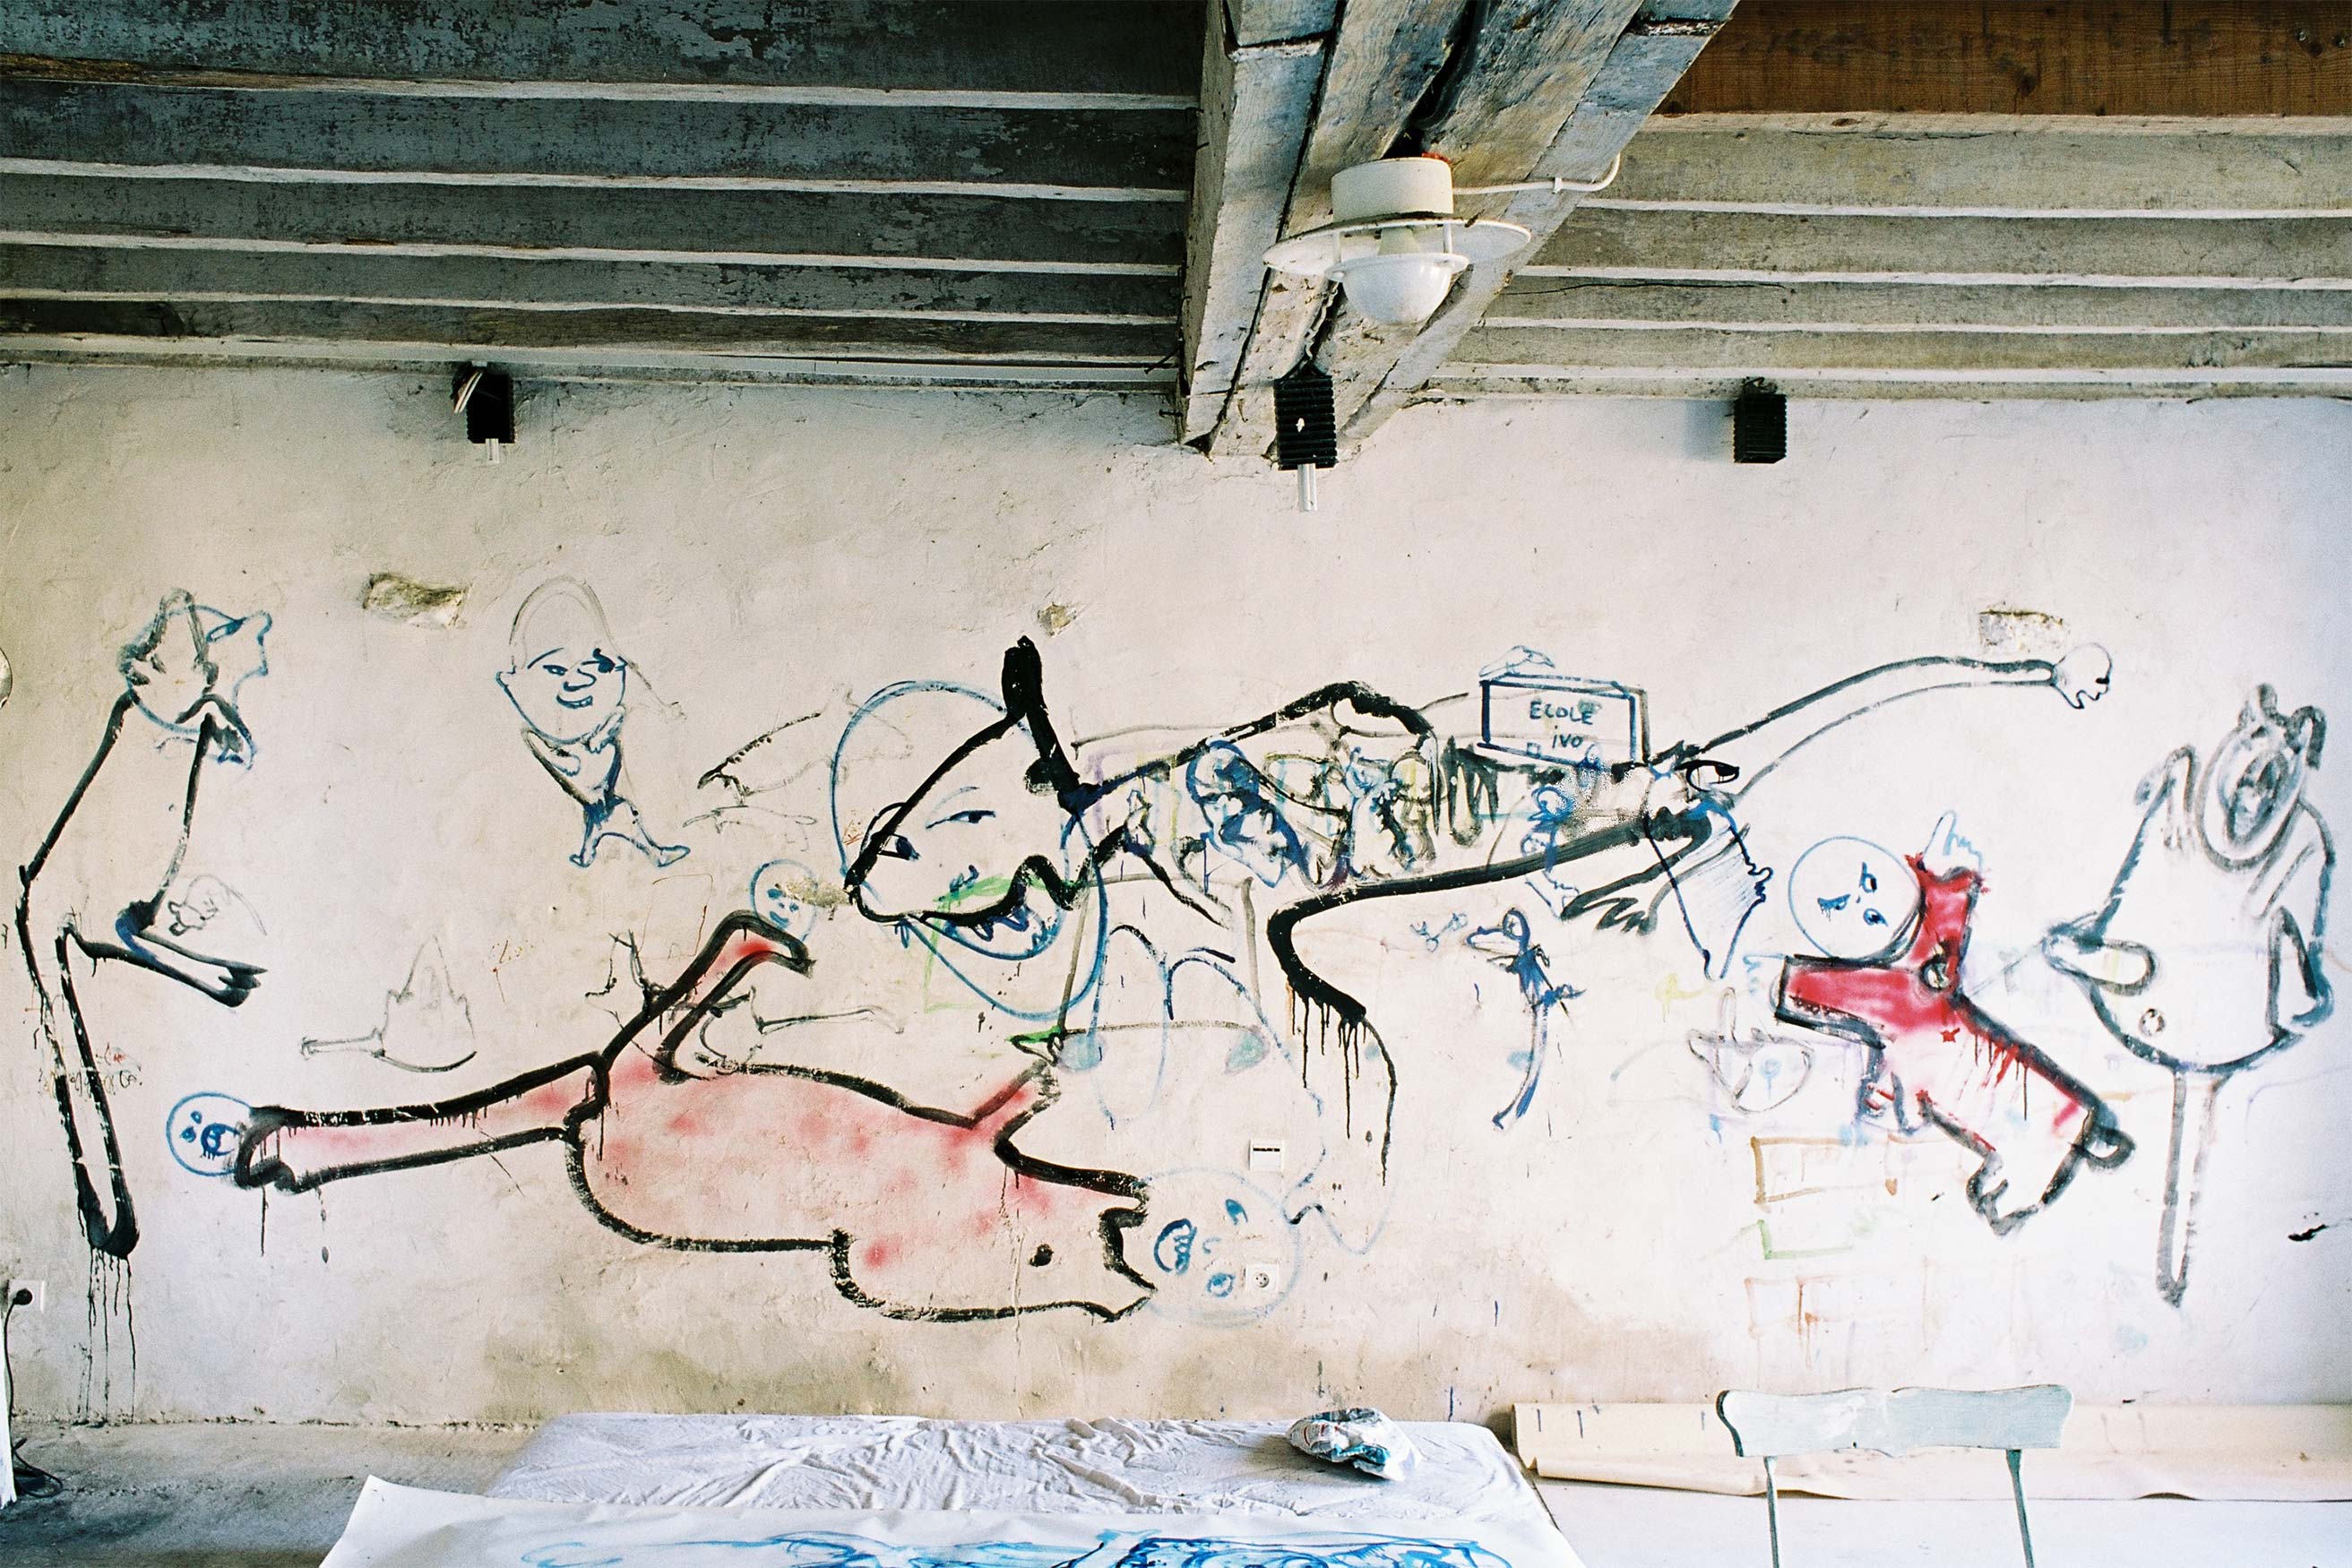 Third studio – Murals at Hérouval